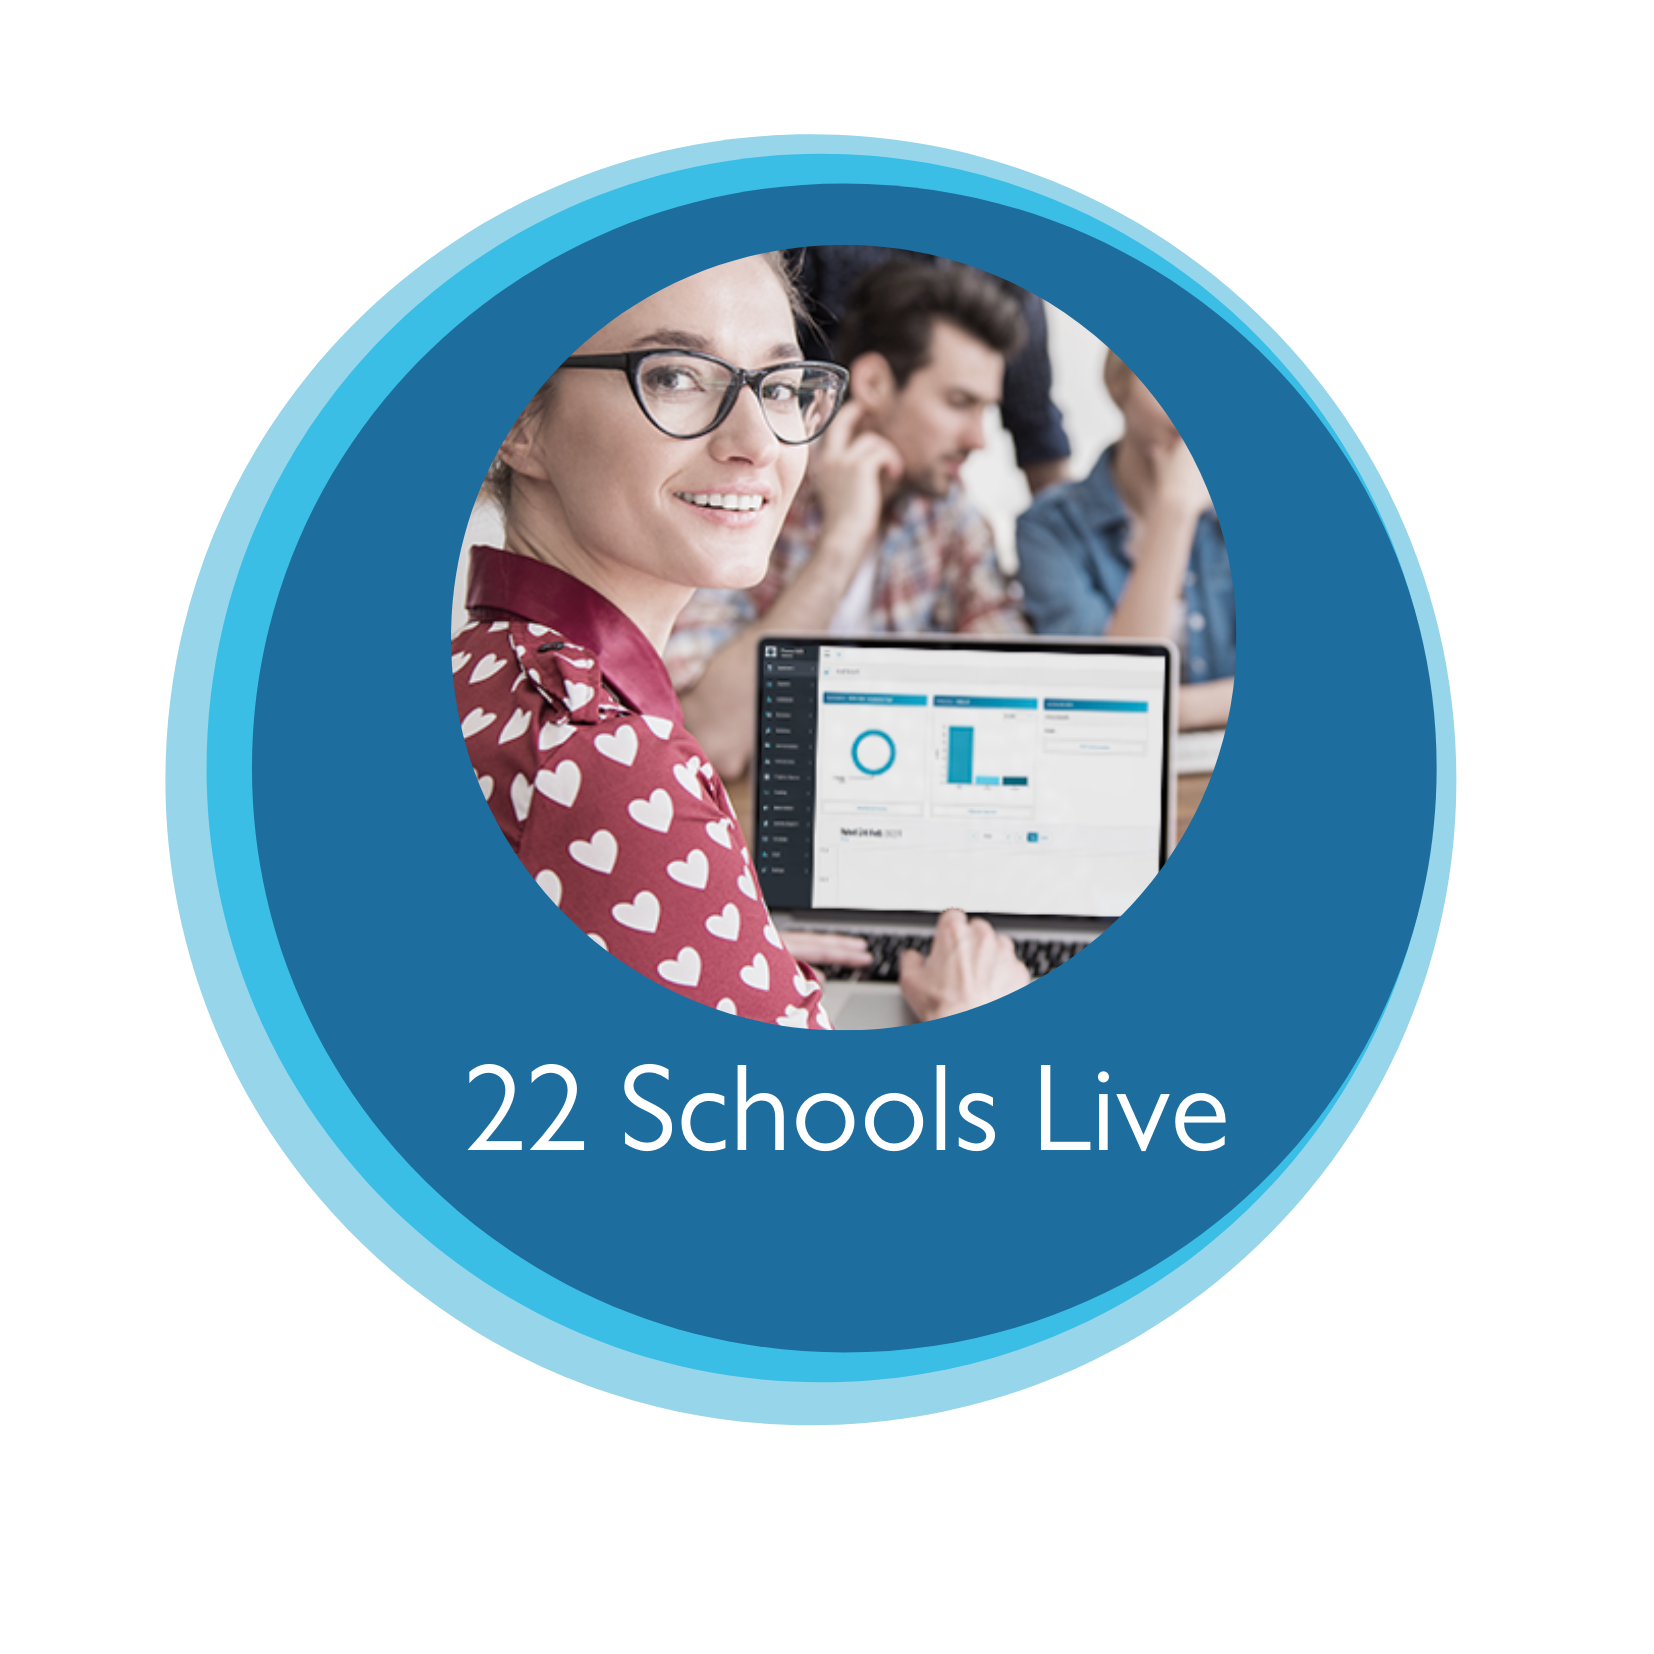 22 schools live